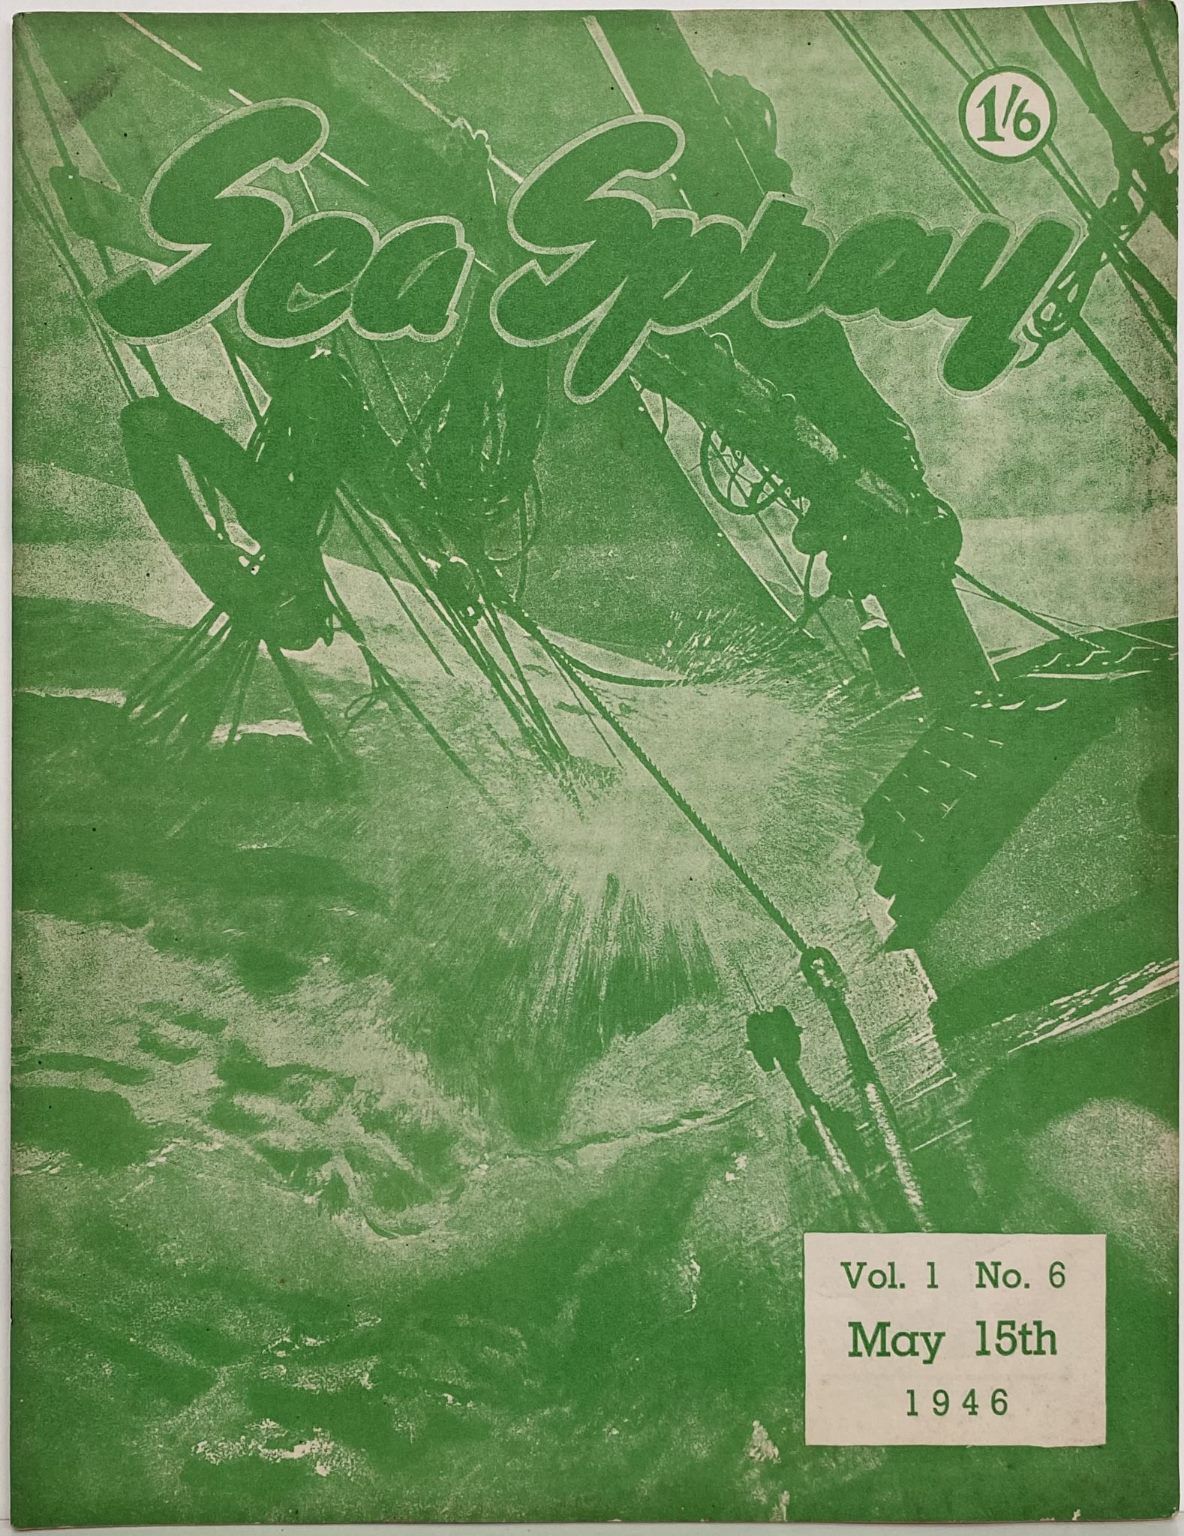 VINTAGE MAGAZINE: Sea Spray - Vol. 1, No. 6 - May 1946